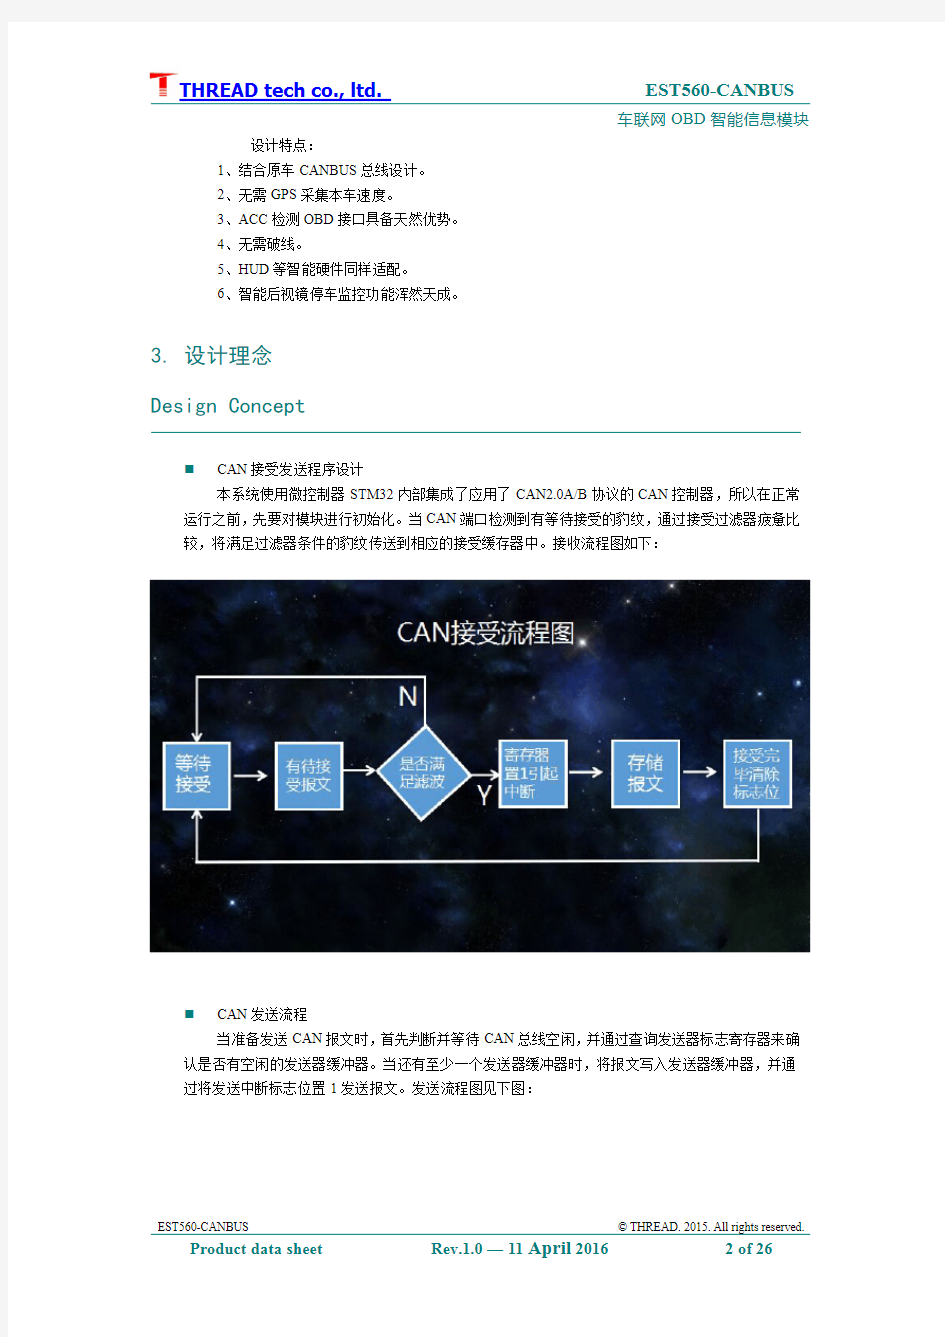 车联网与智能网联汽车CANBUS远程控制产品白皮书